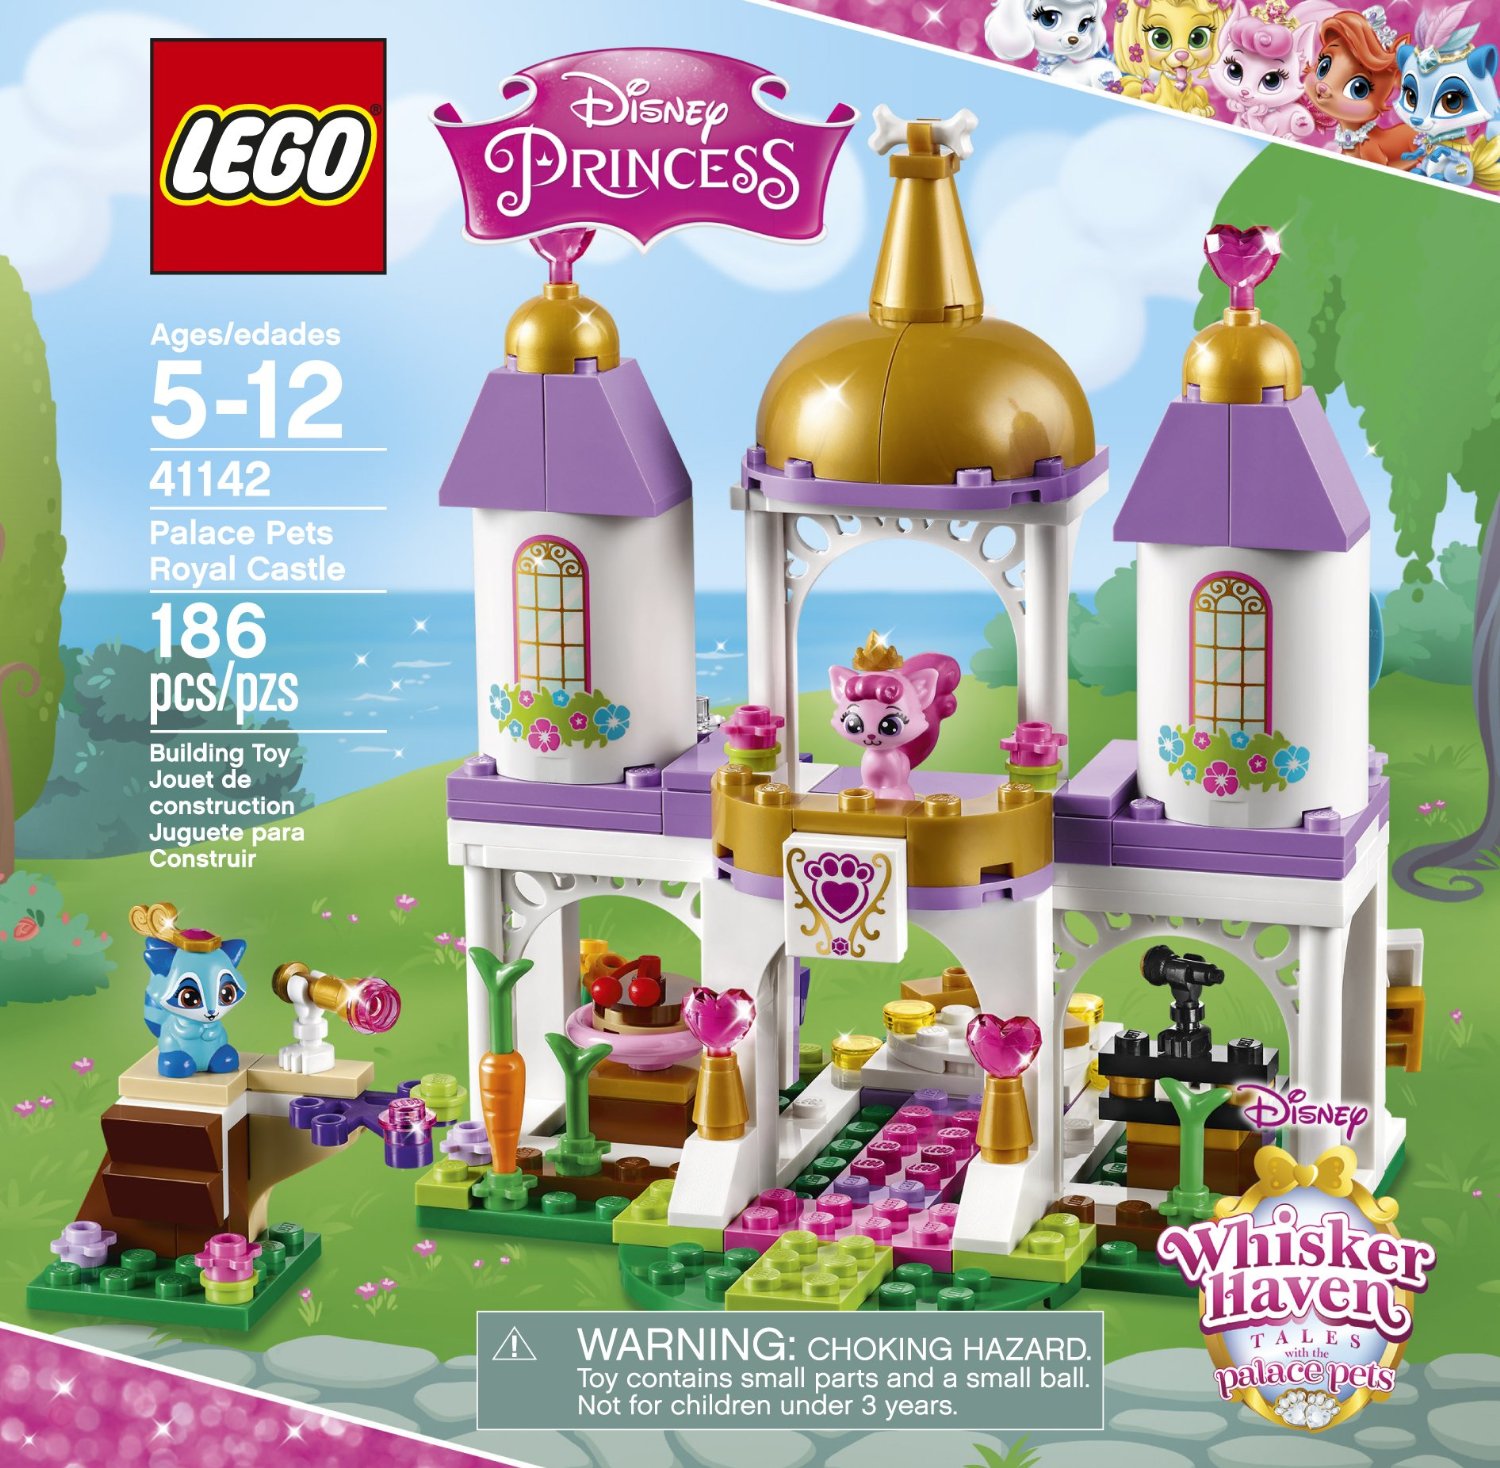 It’s Back! LEGO Disney Princess Palace Pets Royal Castle Only $15.99 on Amazon!